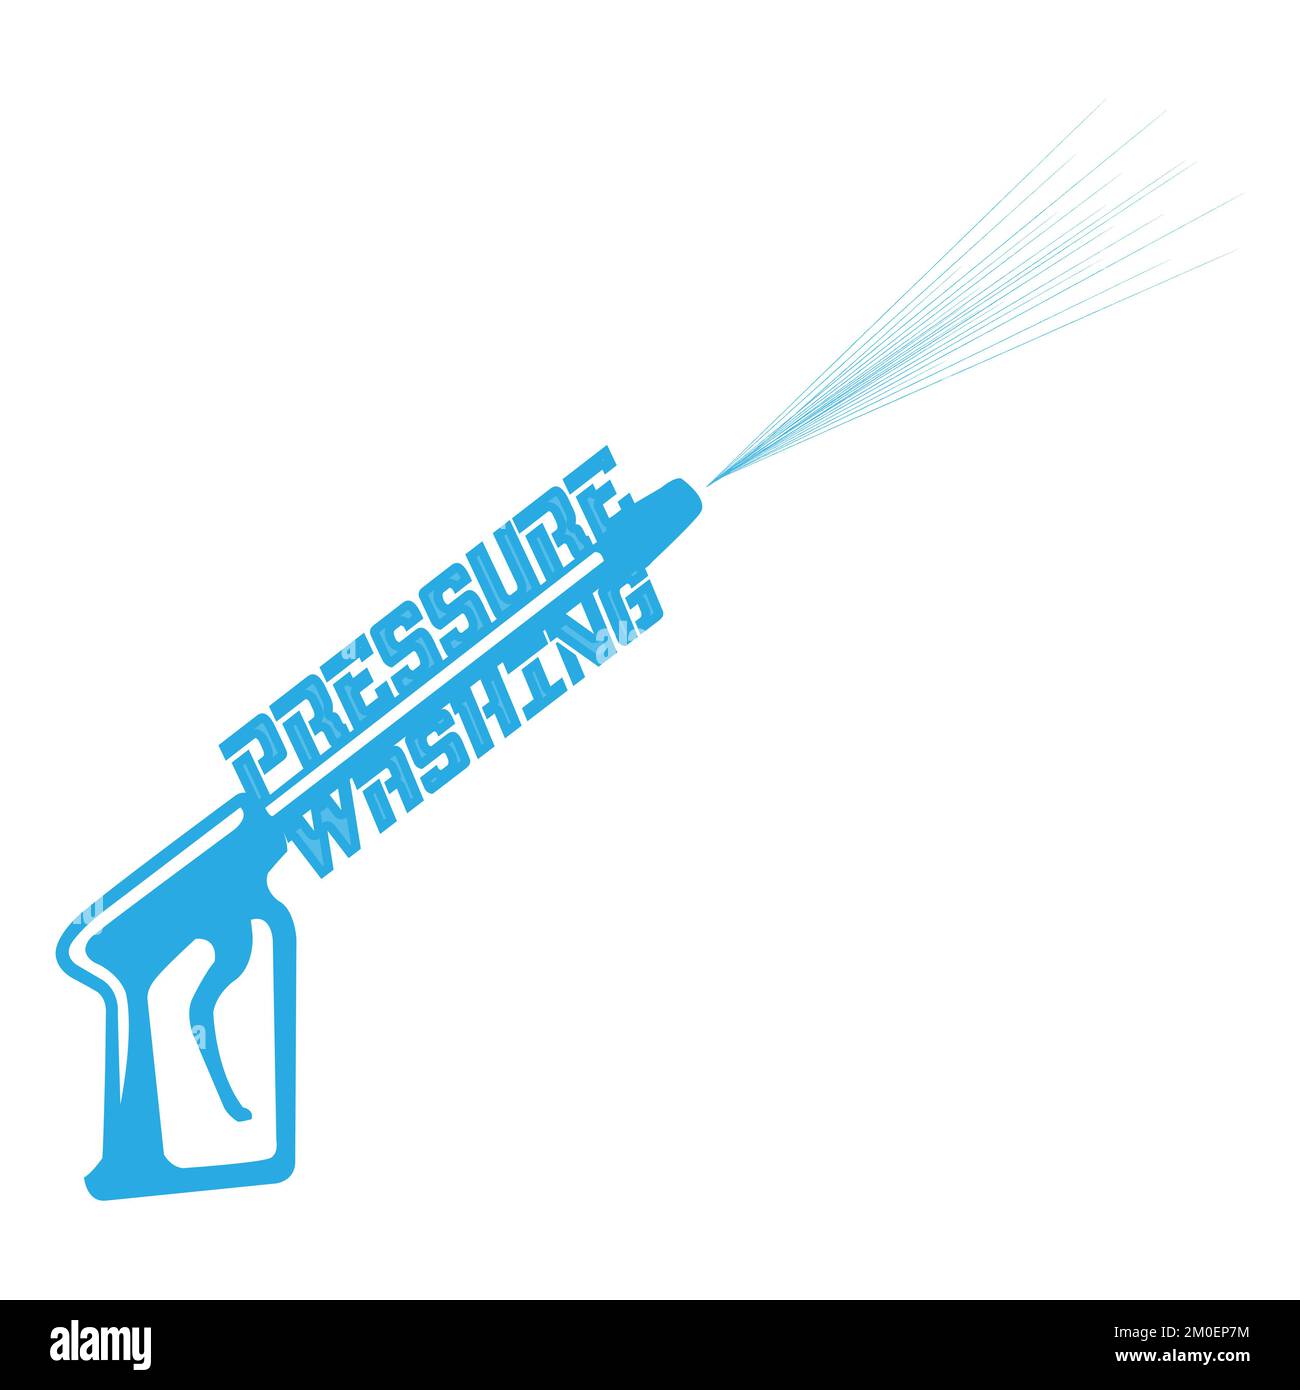 Illustrazione grafica vettoriale del logo spray per lavaggio a pressione modello.EPS 10 Illustrazione Vettoriale